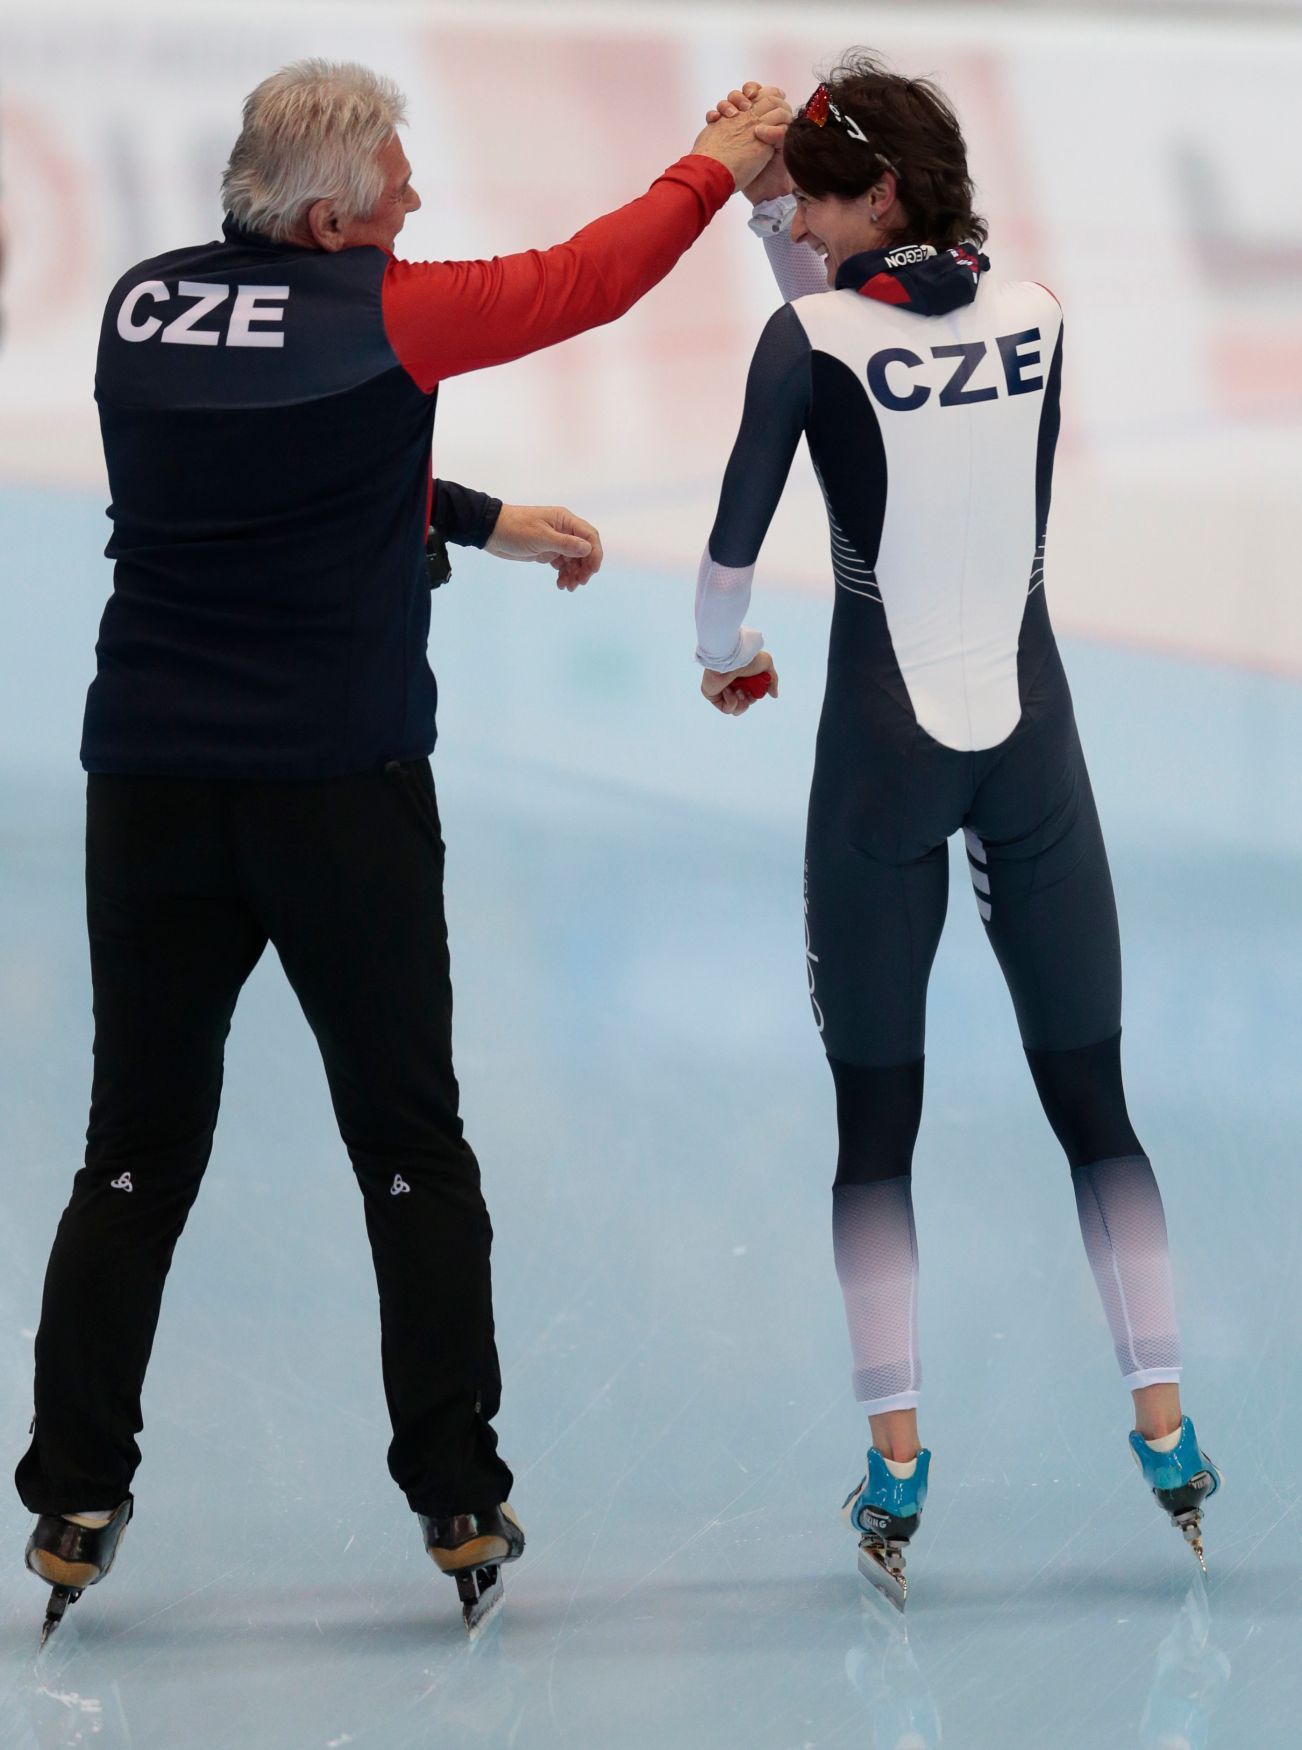 MS v rychlobruslení 2016, 5000 m: Petr Novák a Martina Sáblíková